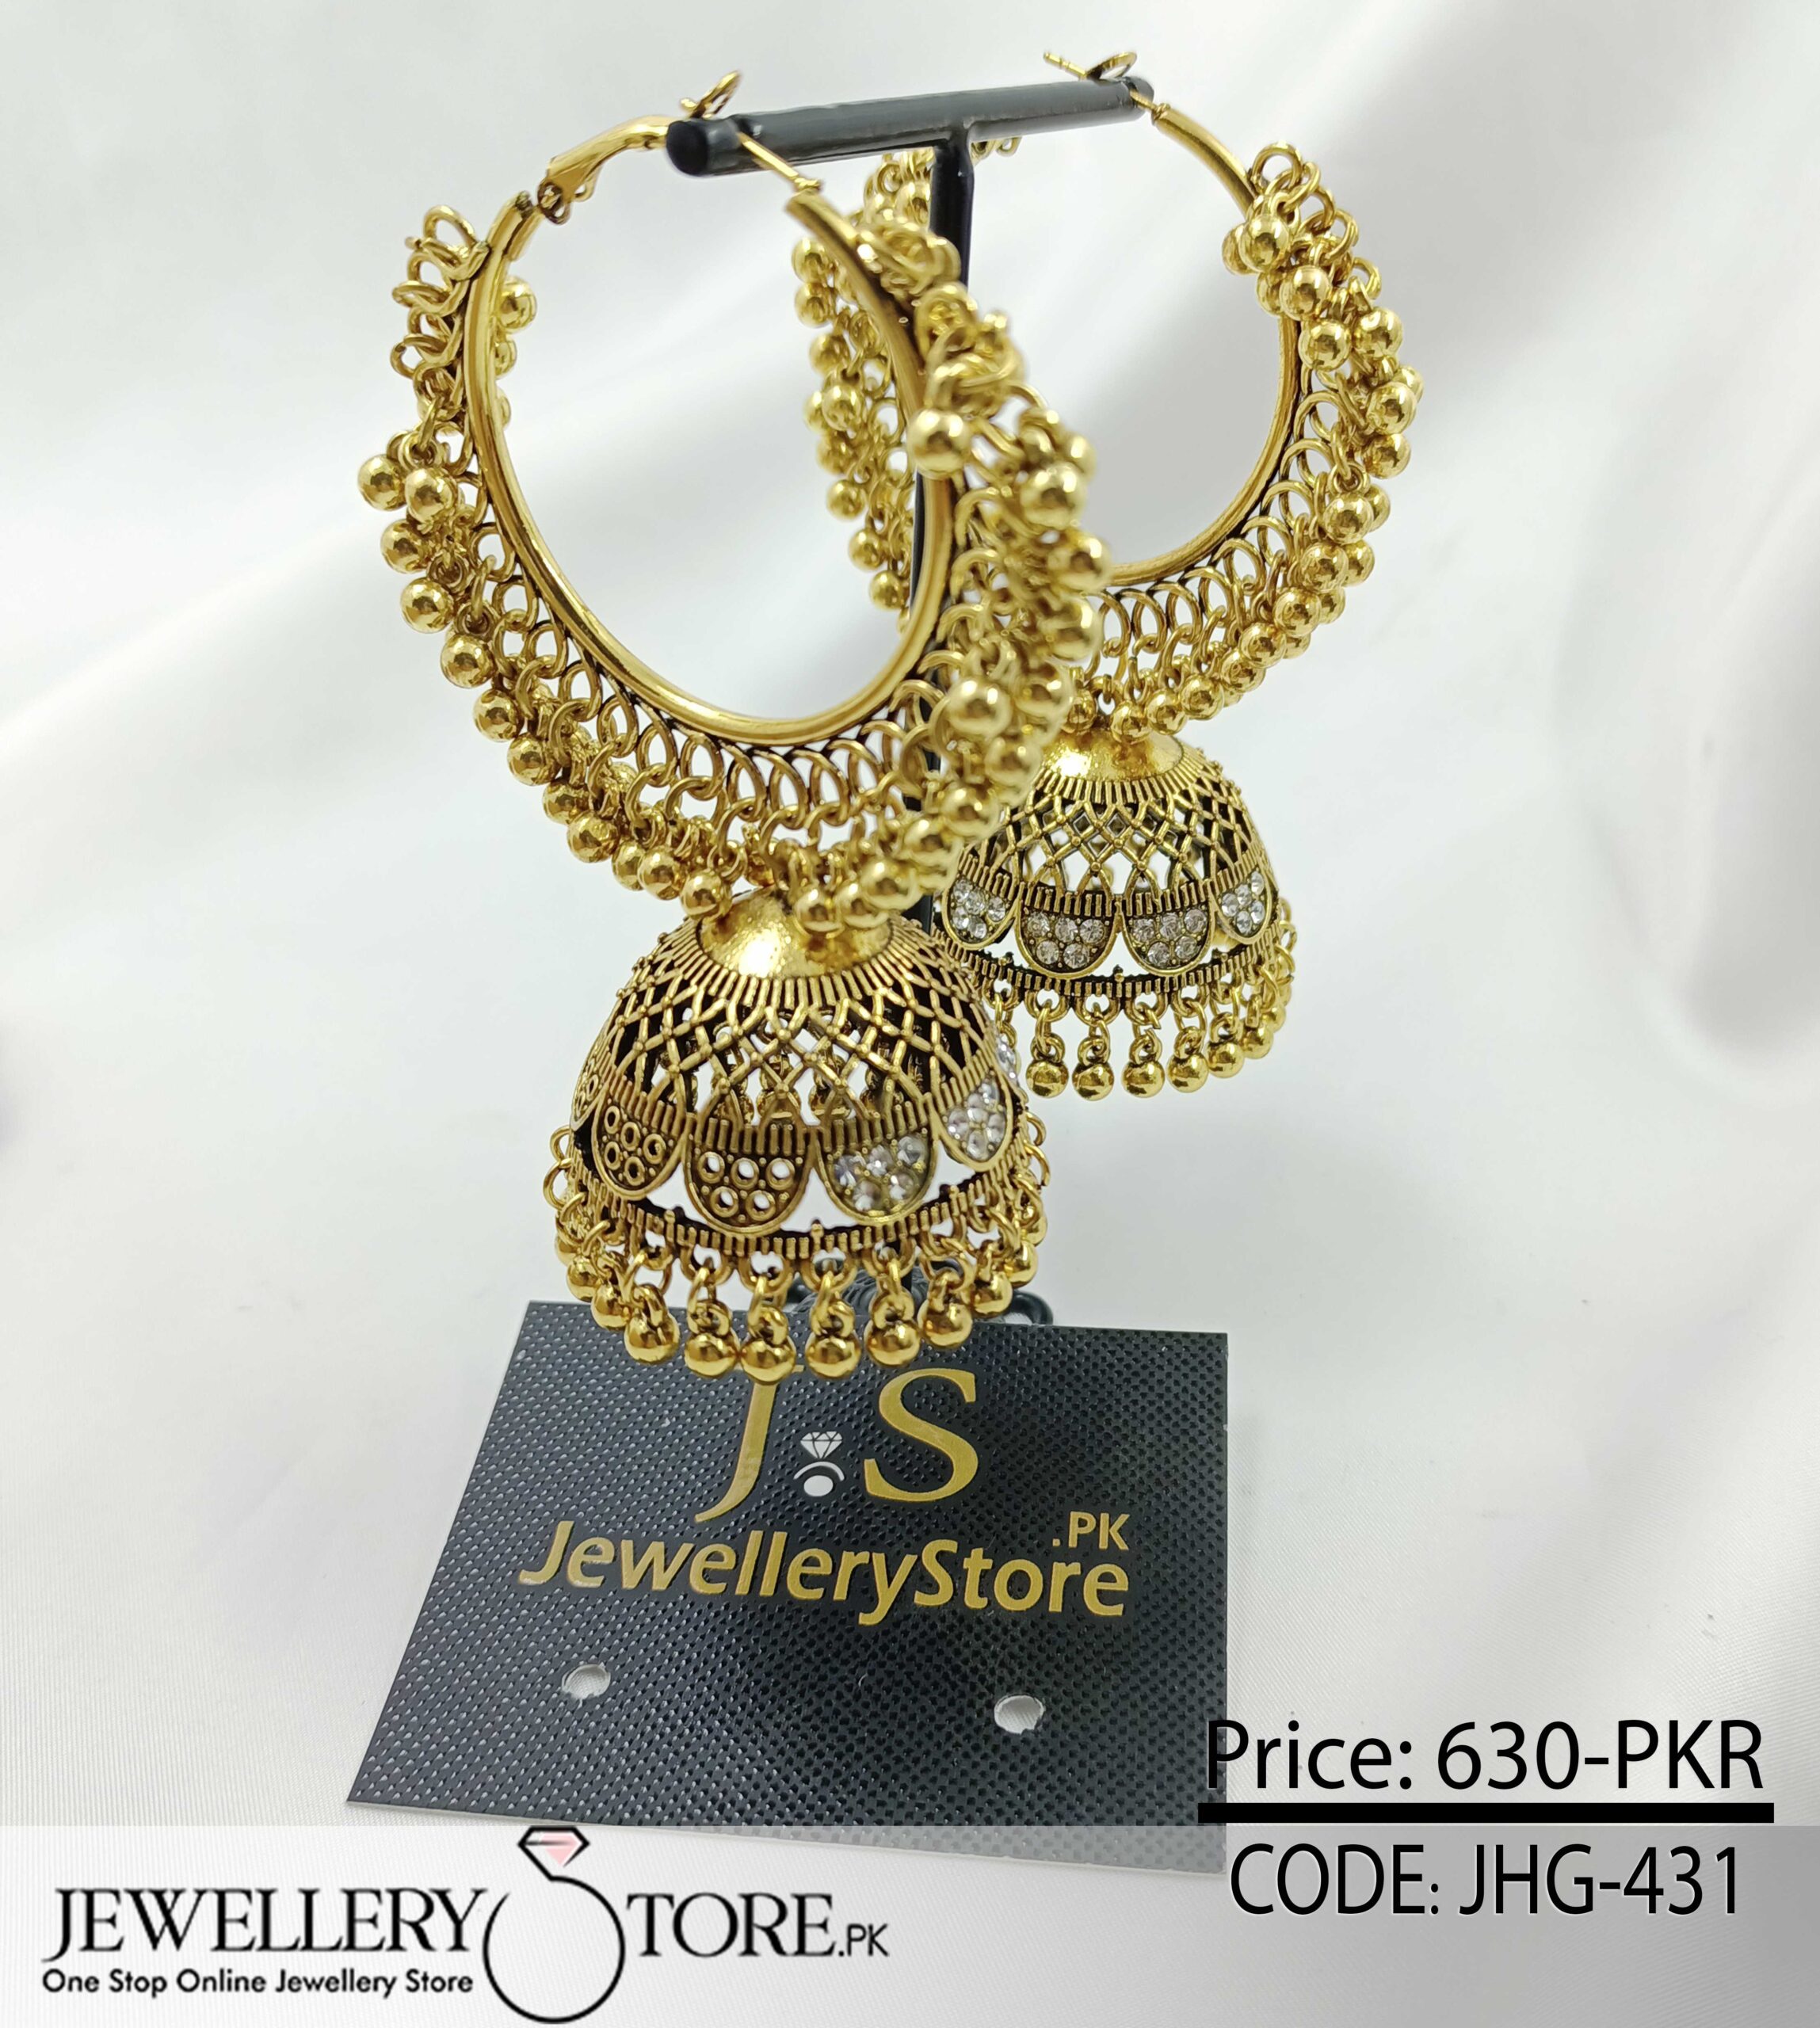 Indian Golden & Silver Jhumka Earrings - J.S Jewellery Store PK